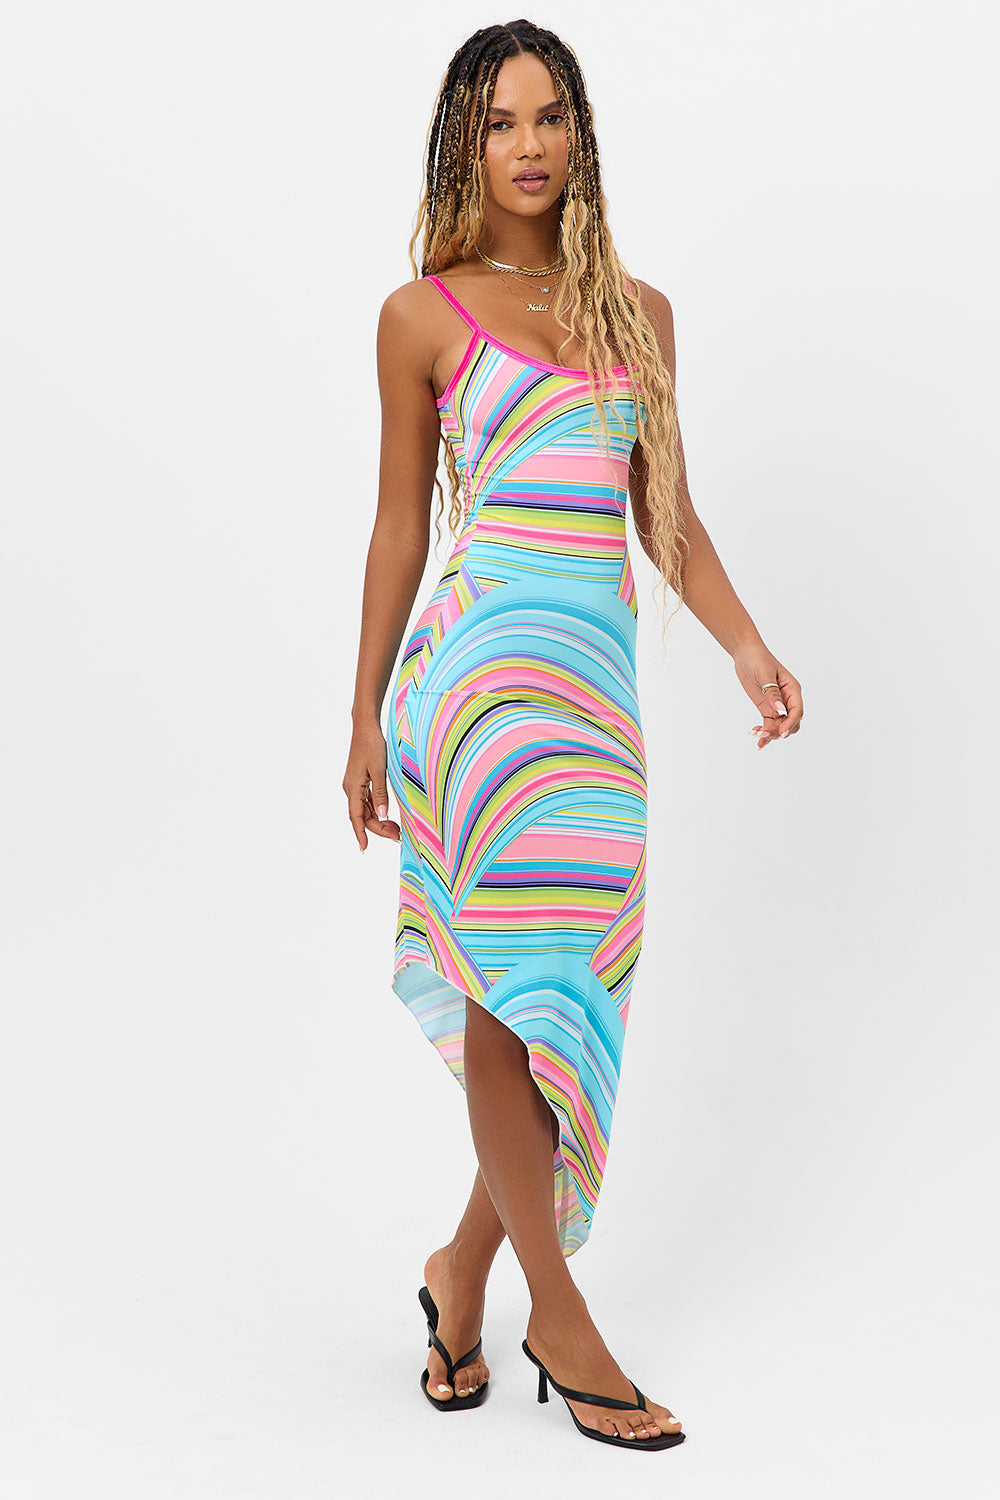 Erma Shine Dress - Rainbow Swirl